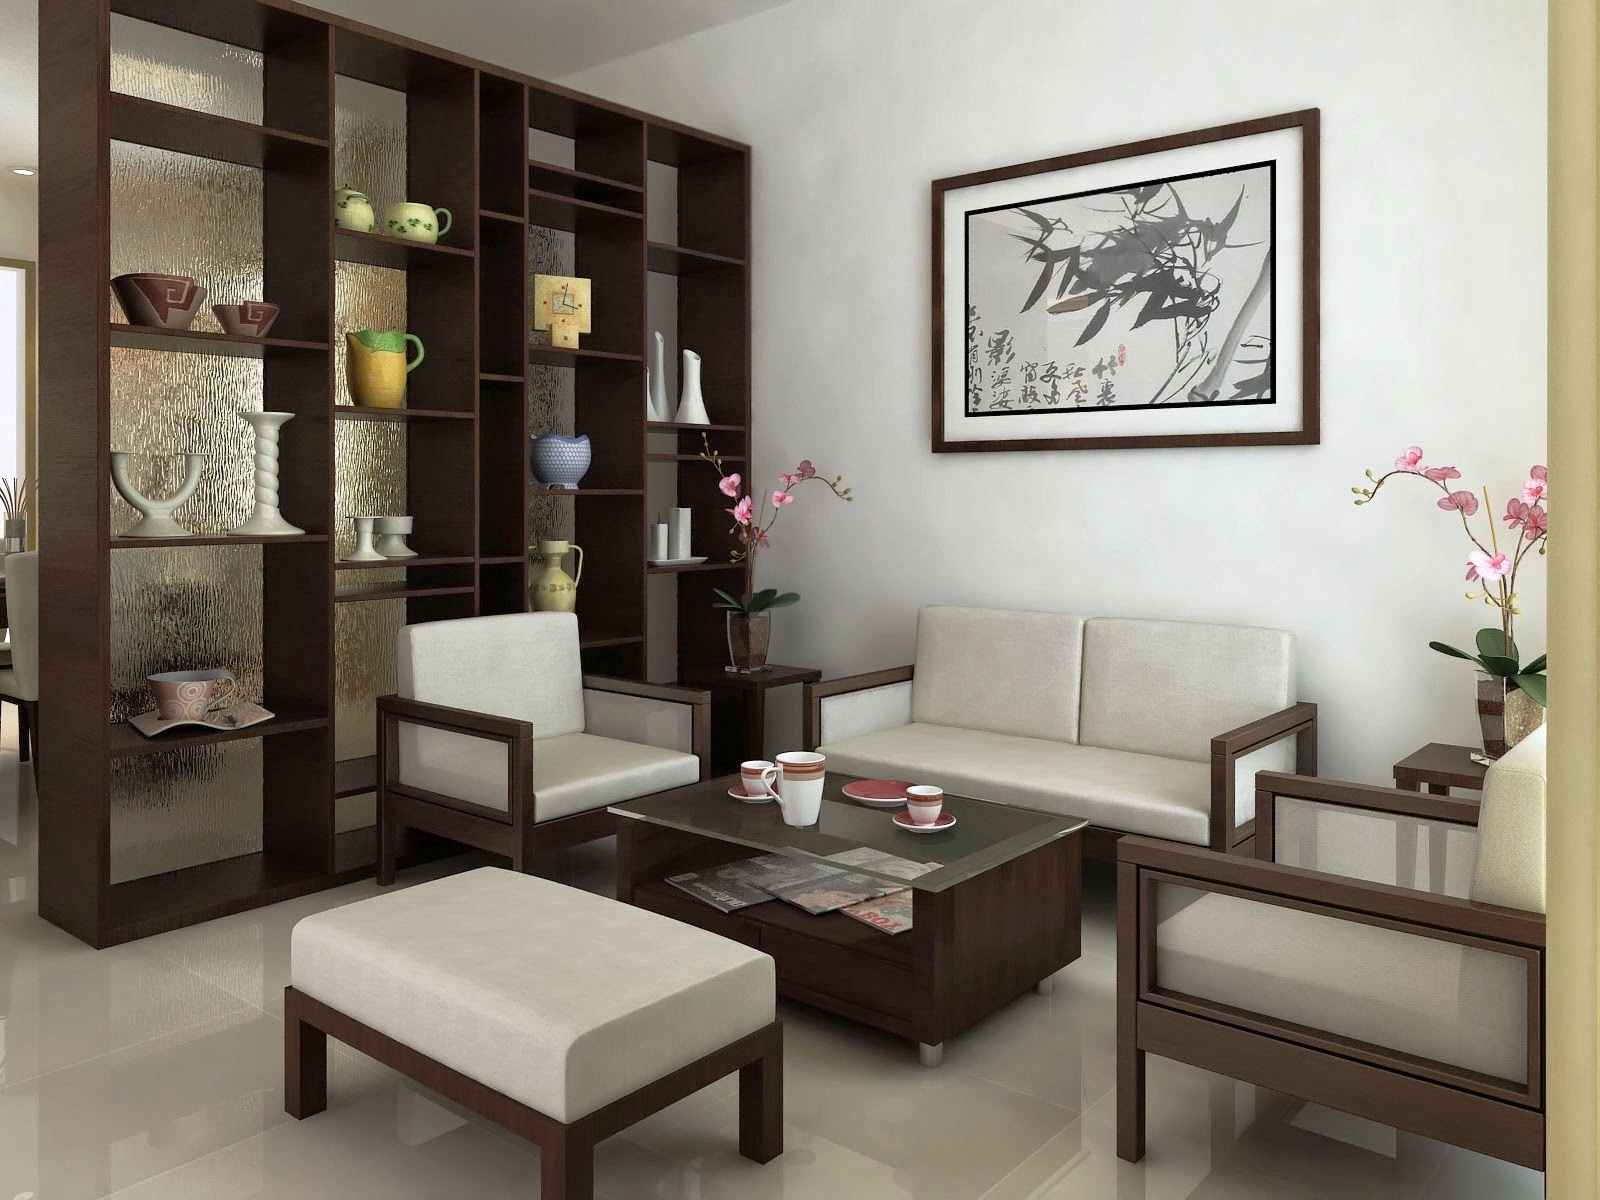 model wallpaper dinding ruang tamu,furniture,room,living room,interior design,table